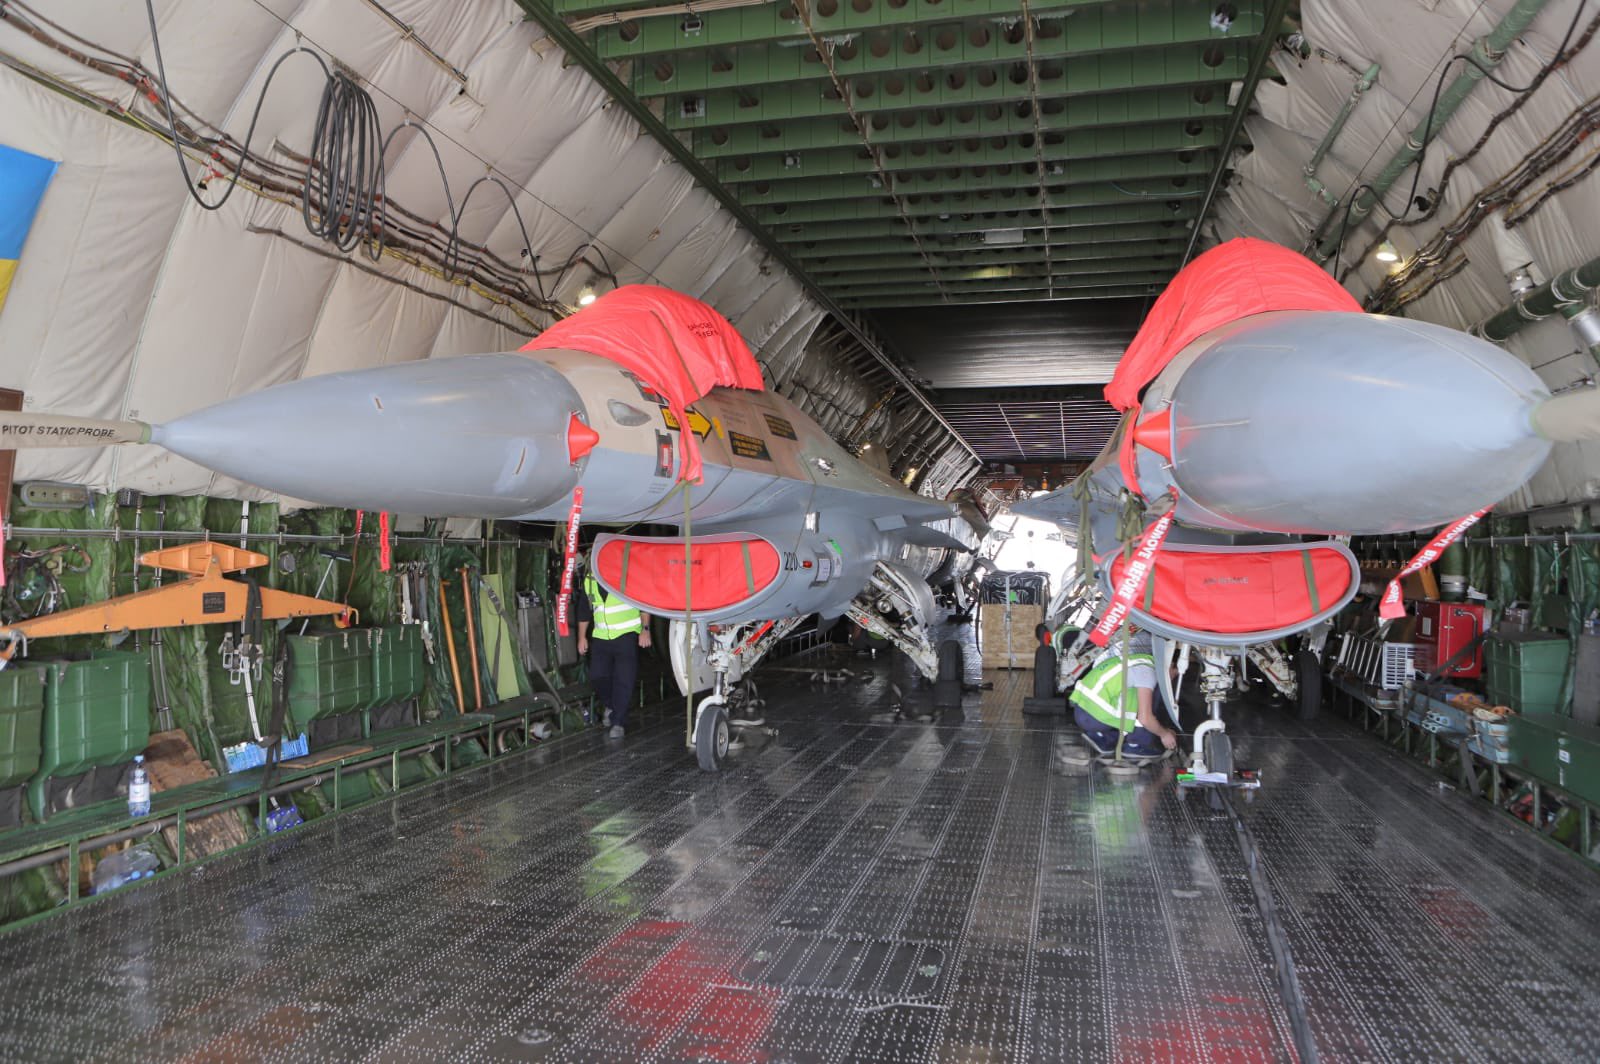 Canada's Top Aces Begins Receiving Surplus Israel Air Force F-16s